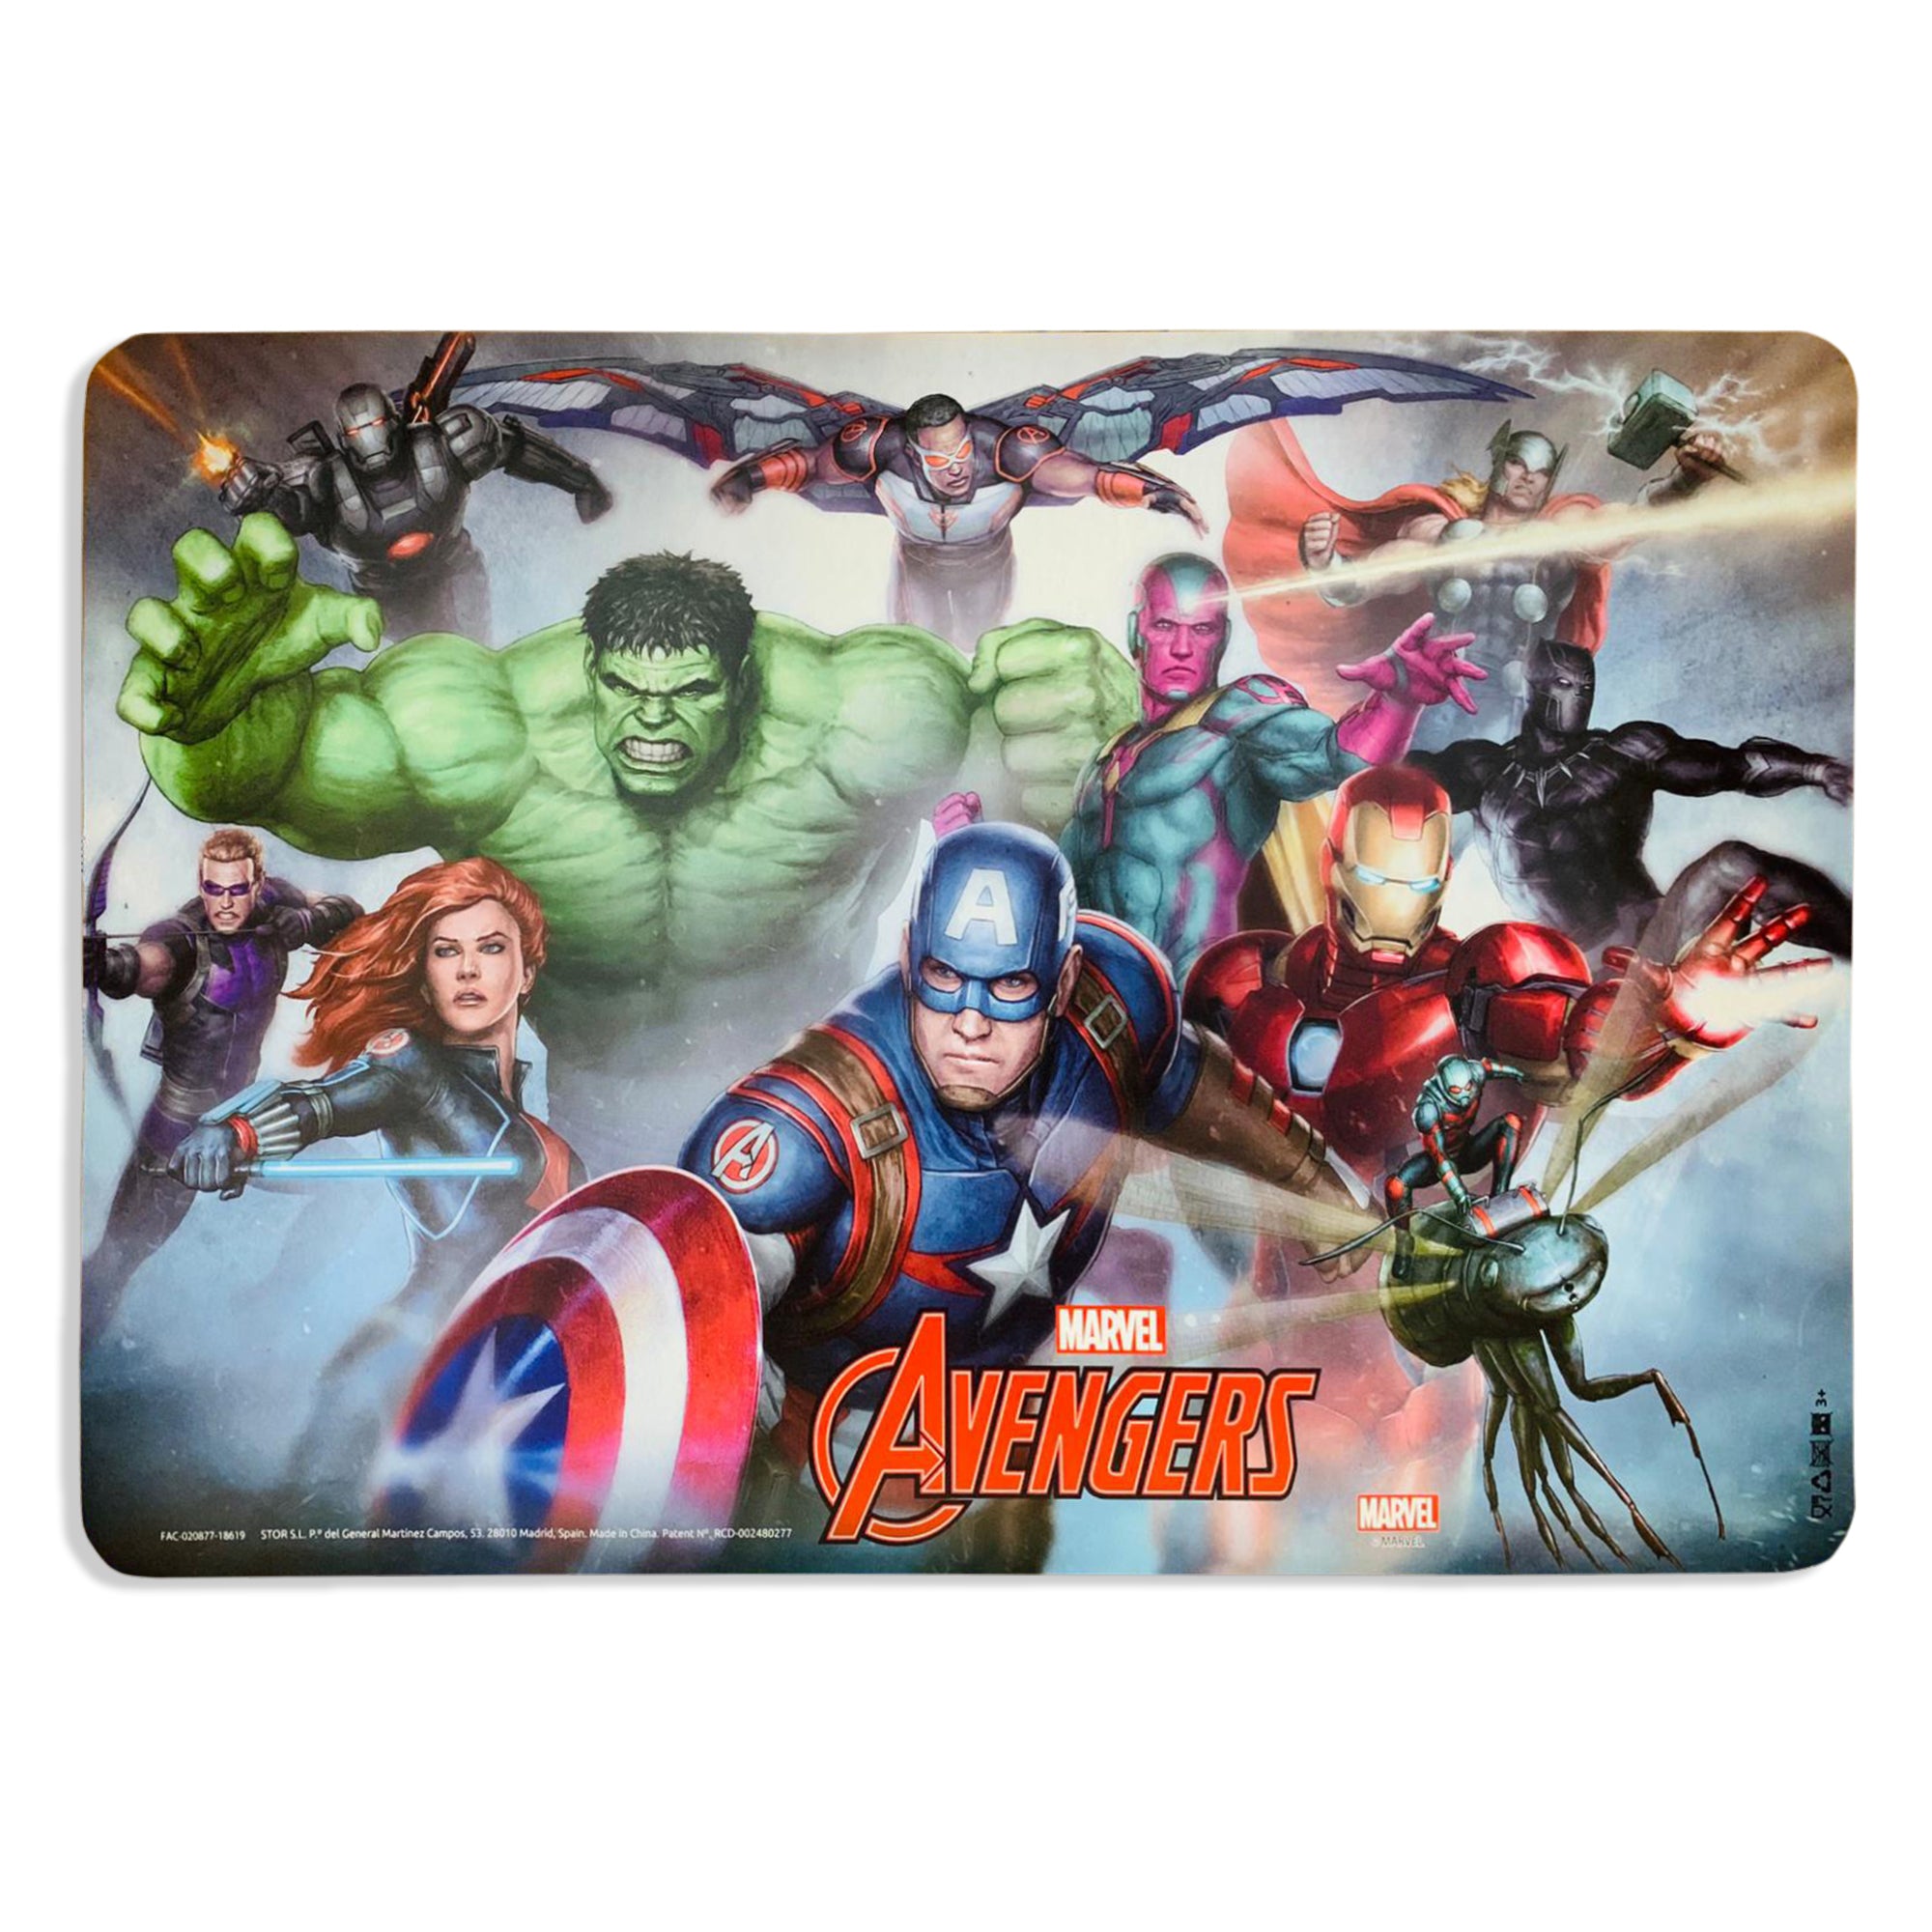 Tovaglietta americana ufficiale Marvel Avengers colazione asilo bimbo 2661